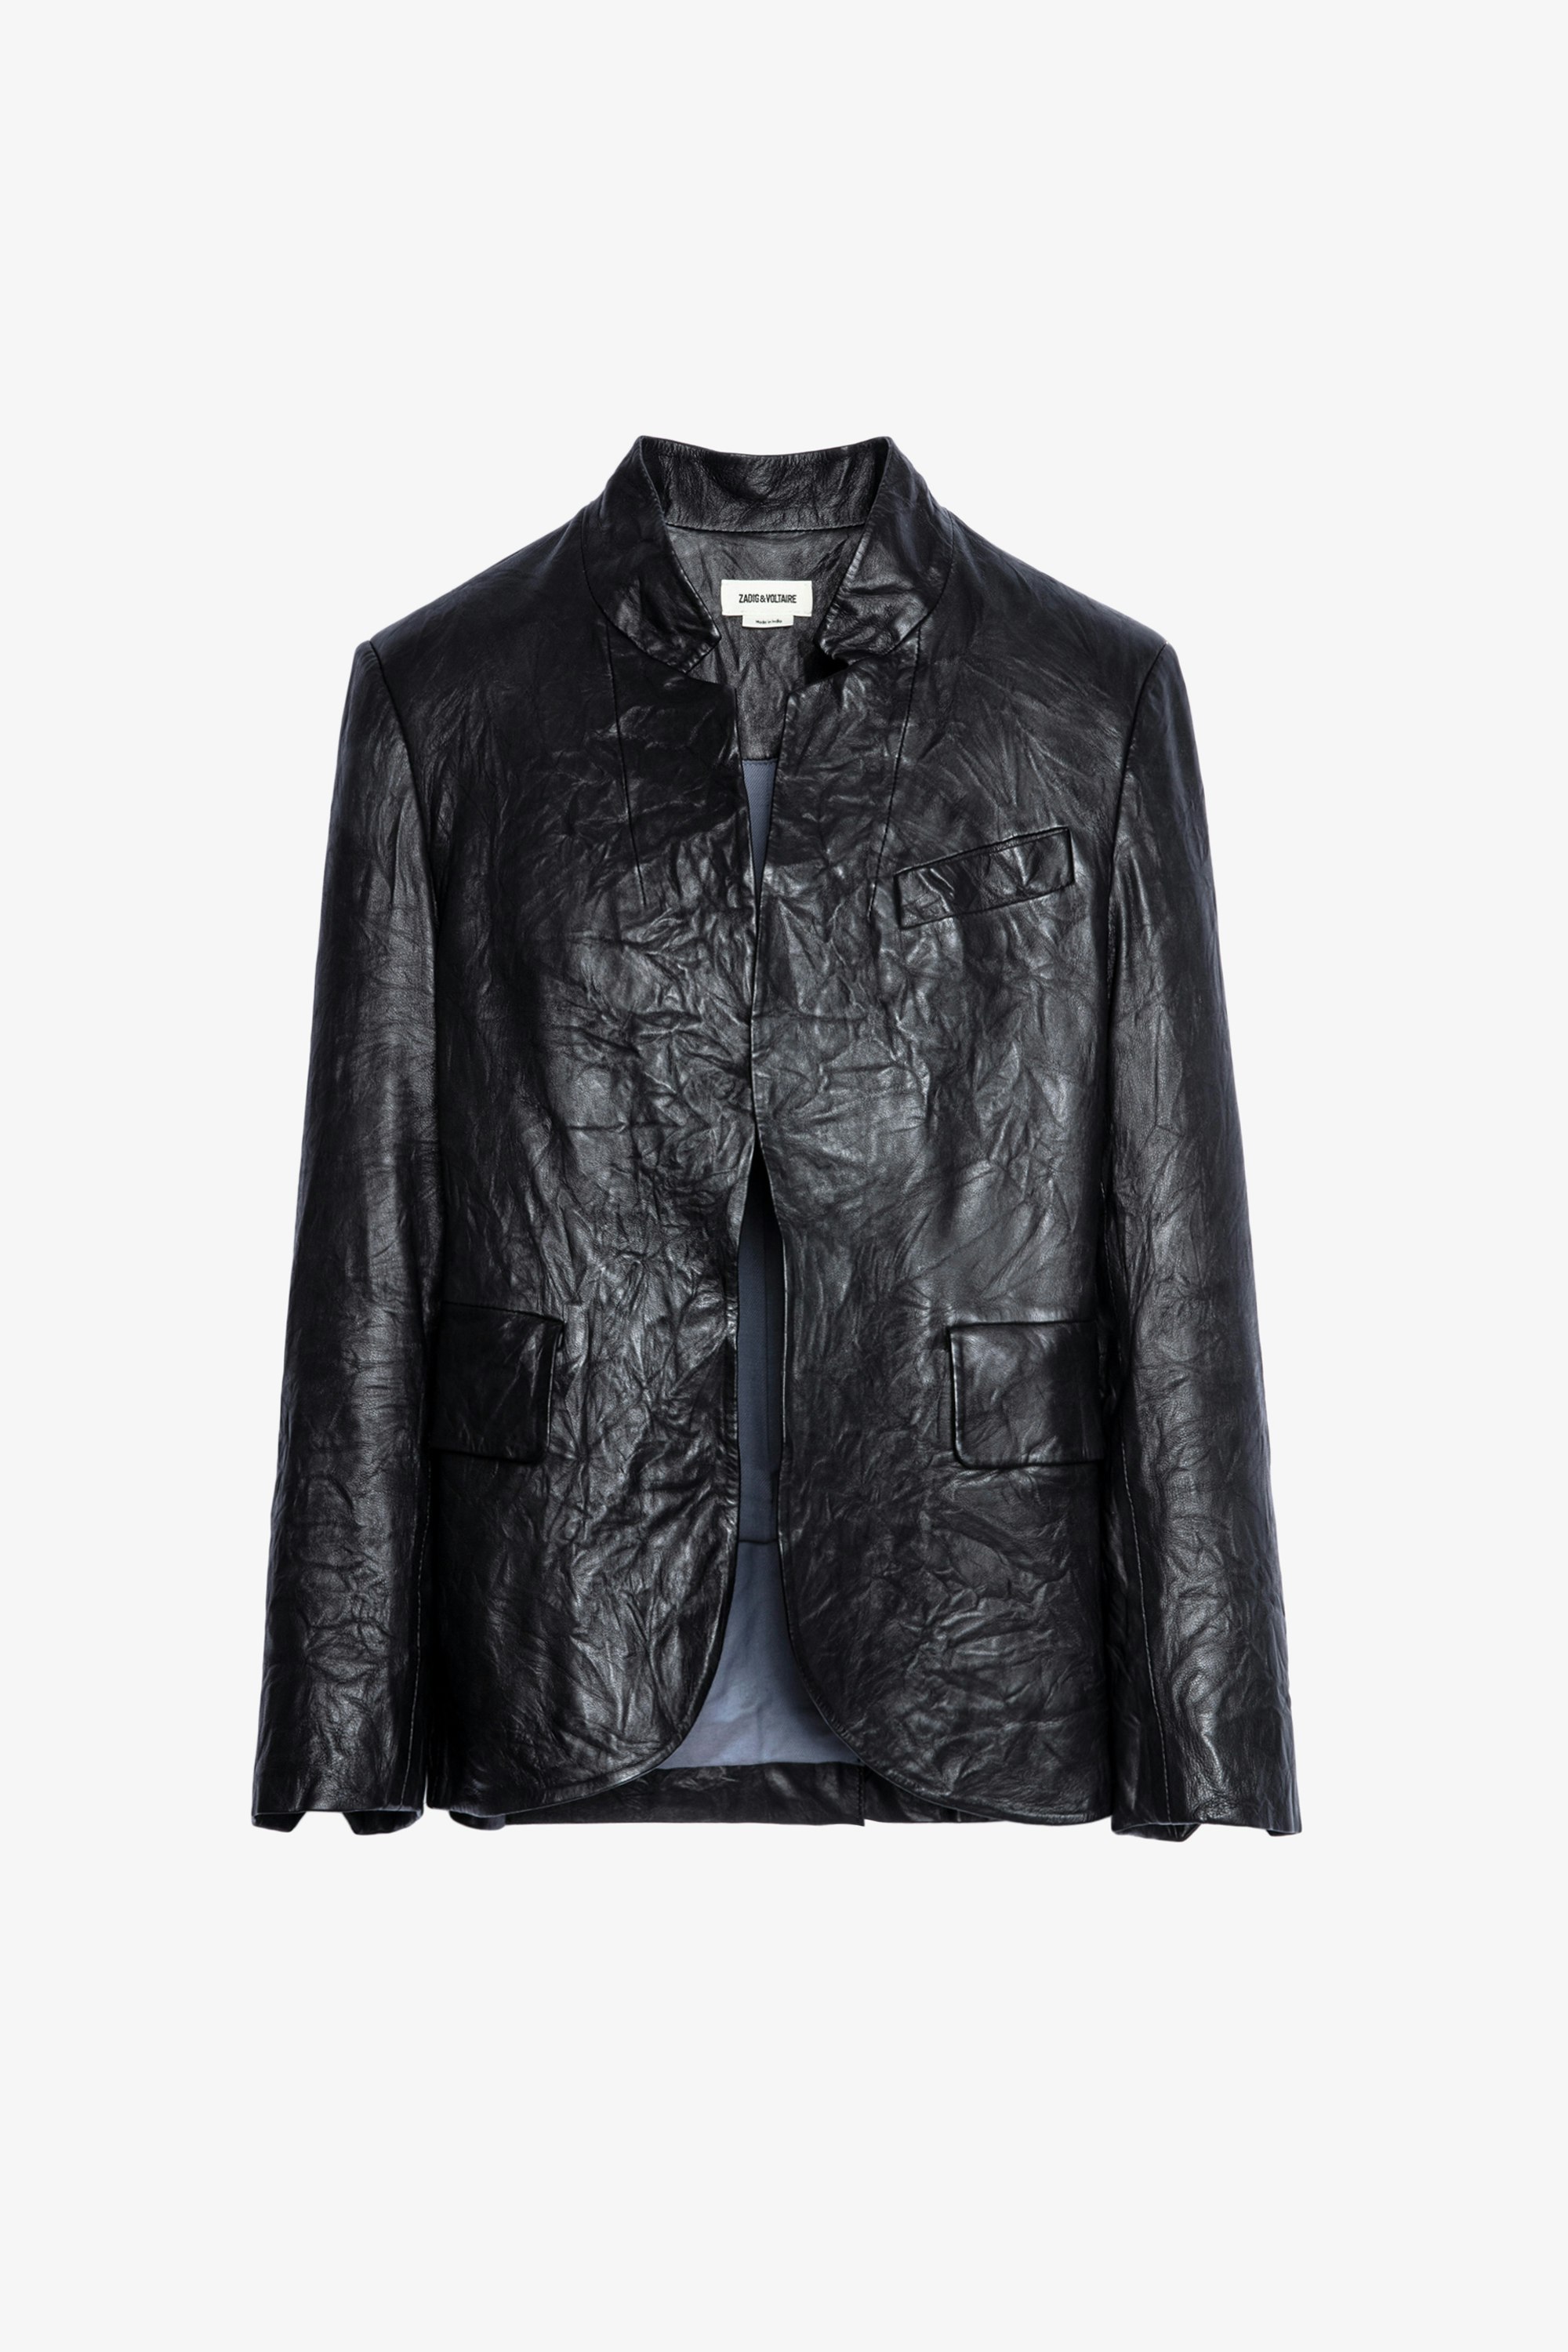 Verys レザージャケット - Women’s black leather jacket.